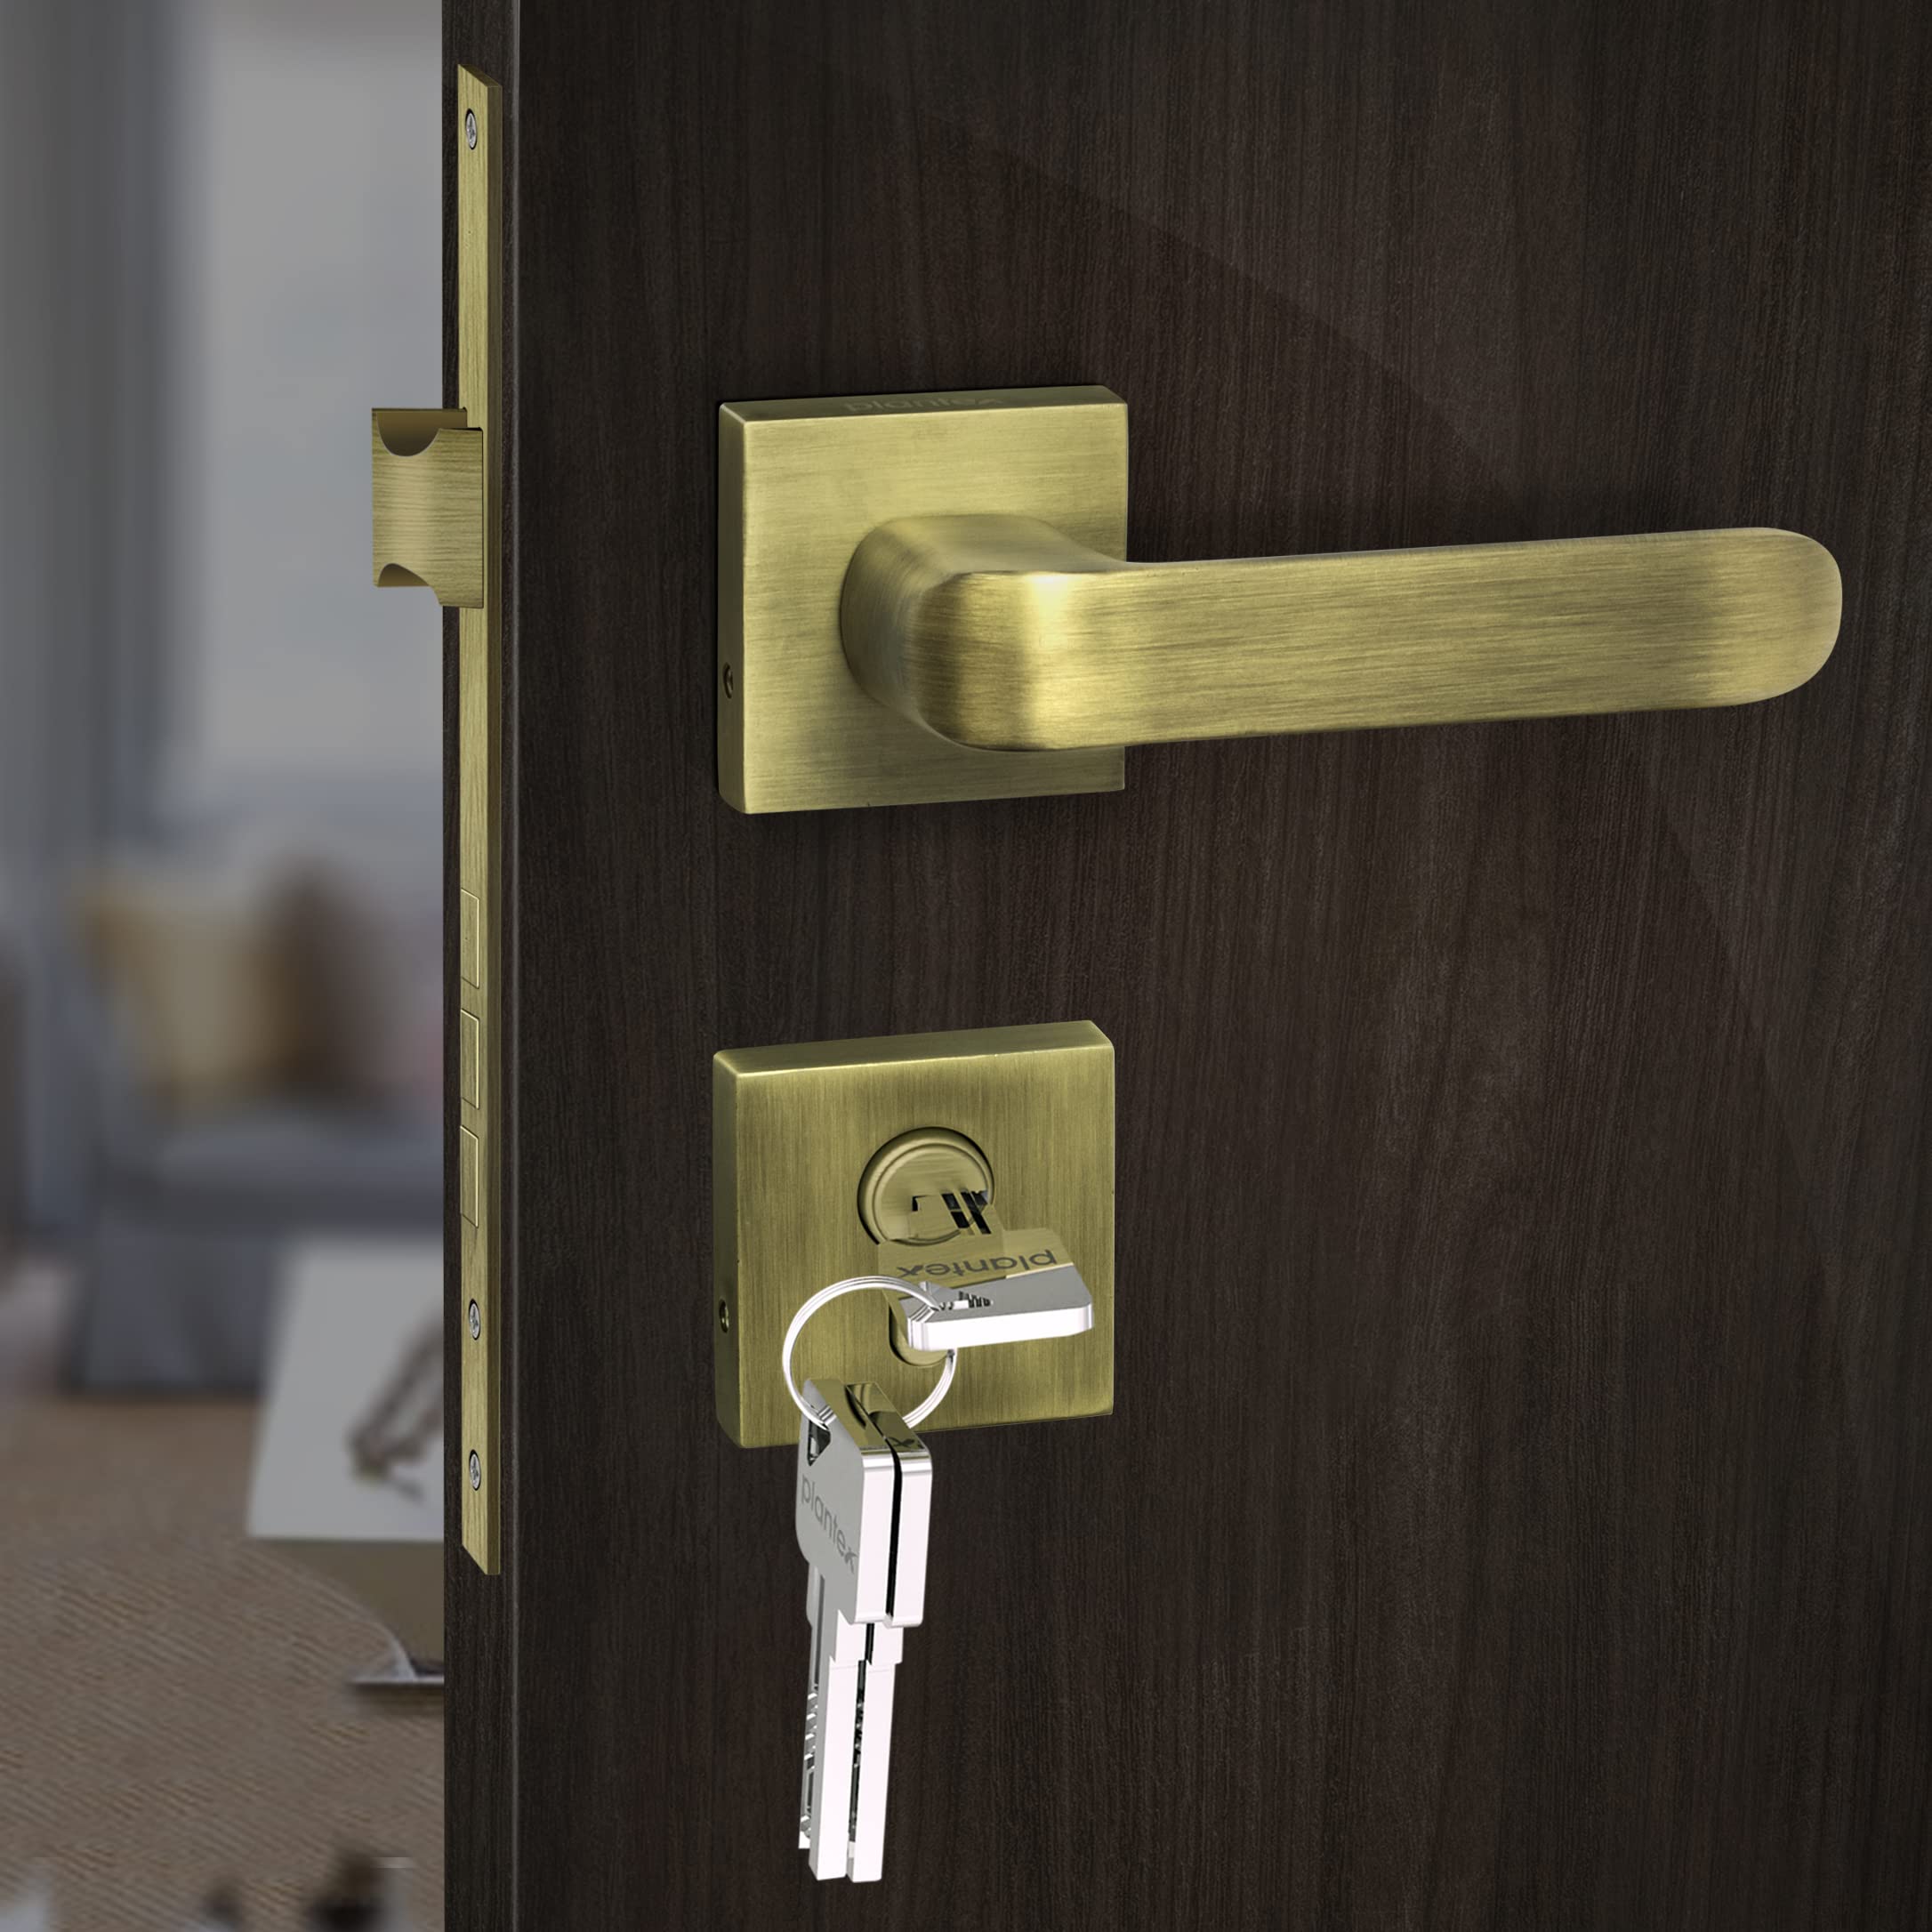 Plantex Heavy Duty Door Lock - Main Door Lock Set with 3 Keys/Mortise Door Lock for Home/Office/Hotel (7110 - Brass Antique)